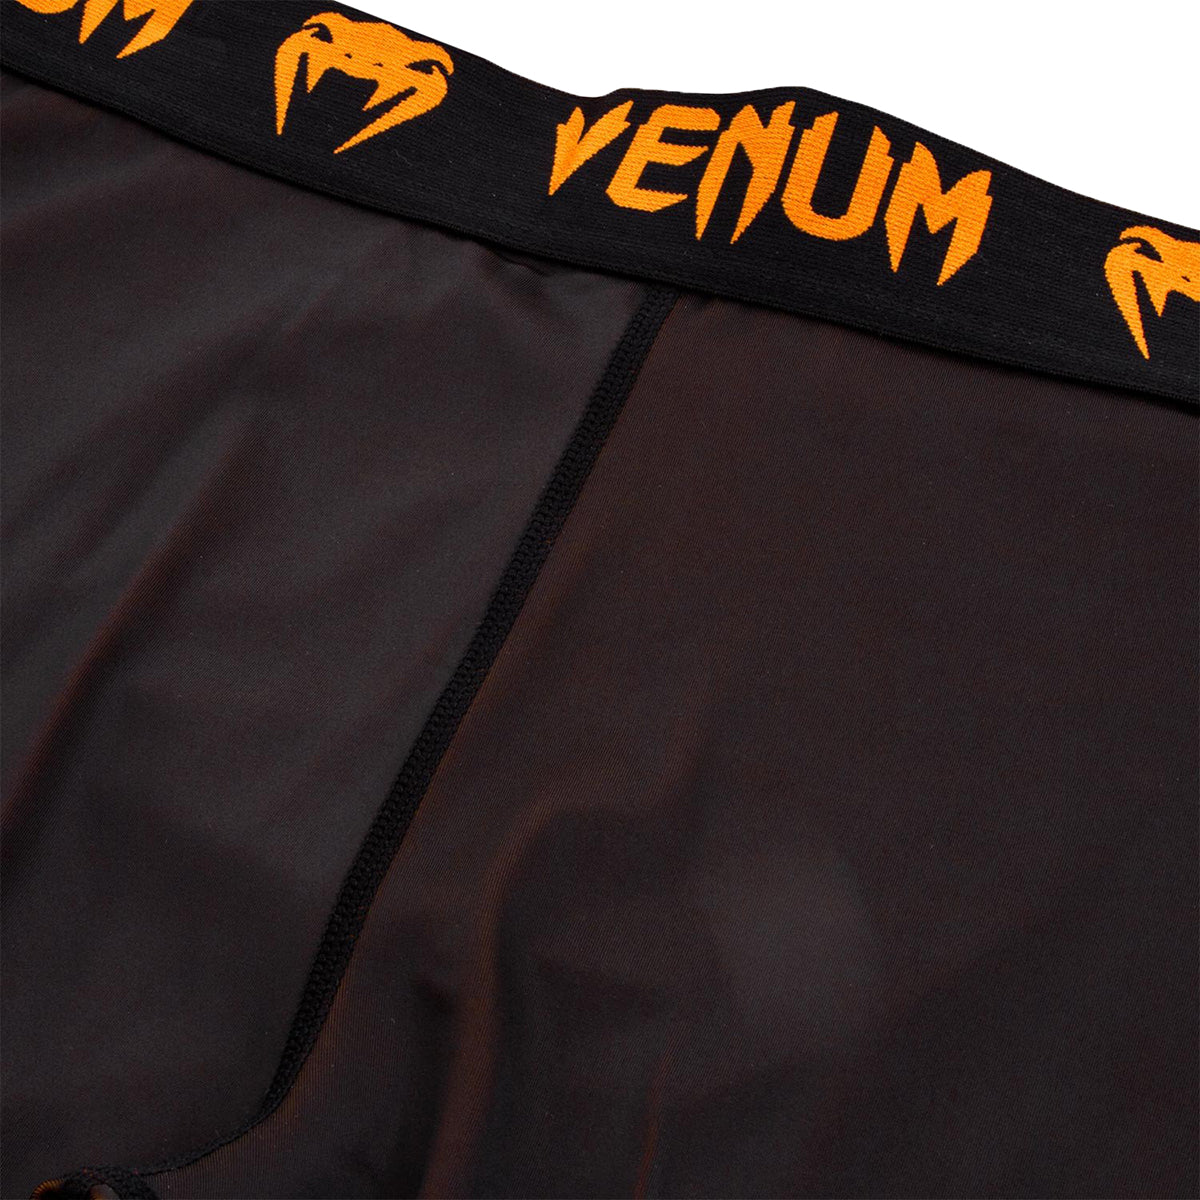 Venum Giant Dry Tech Fit Cut Compression Spats - Black/Neo Orange Venum